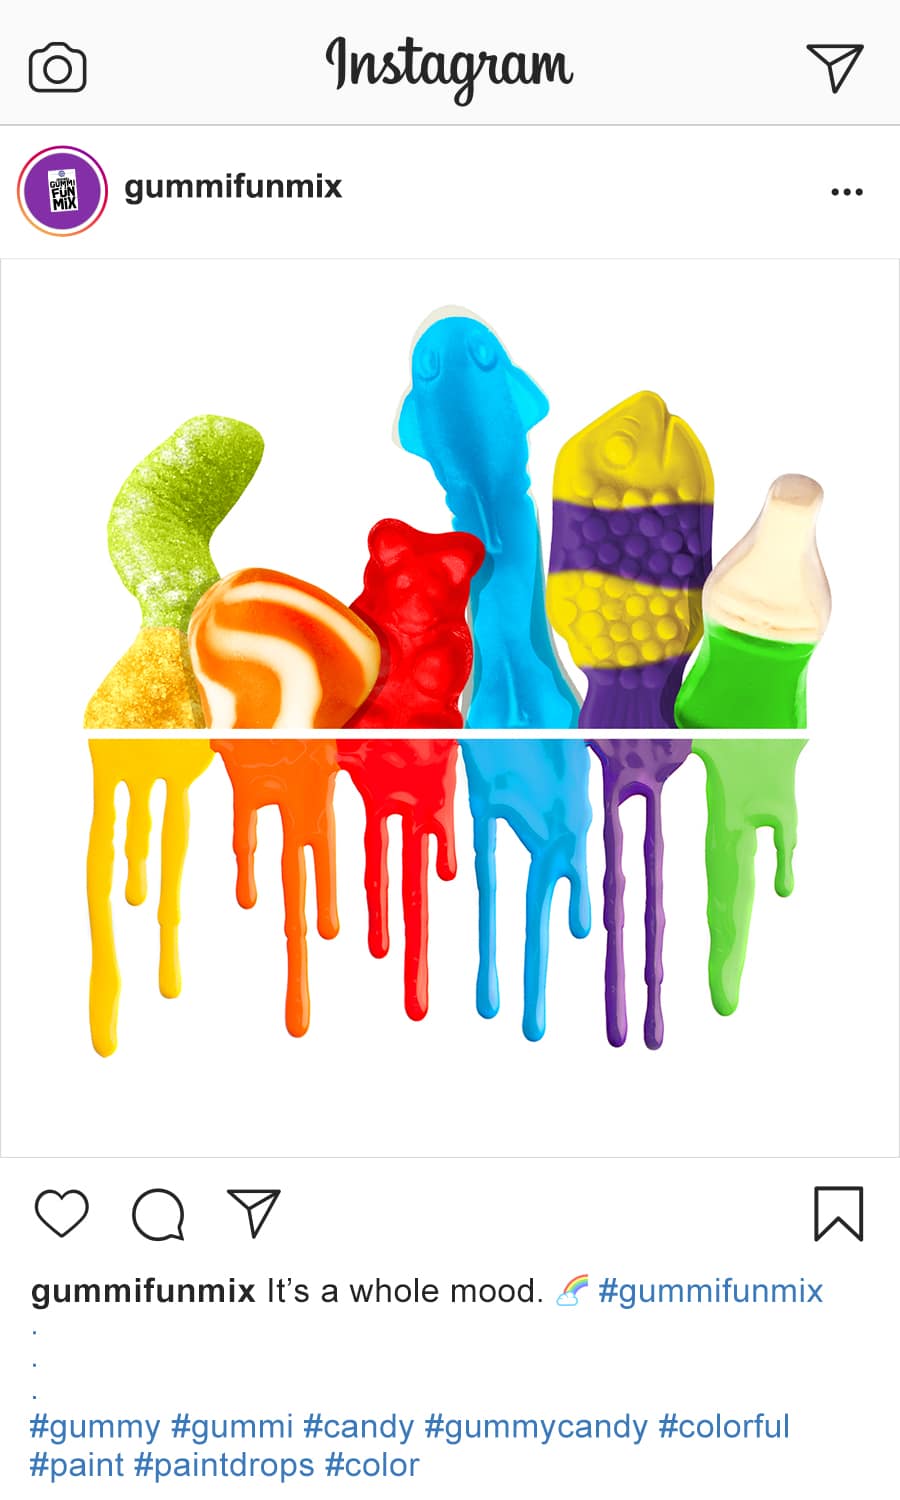 rainbow of melting gummis